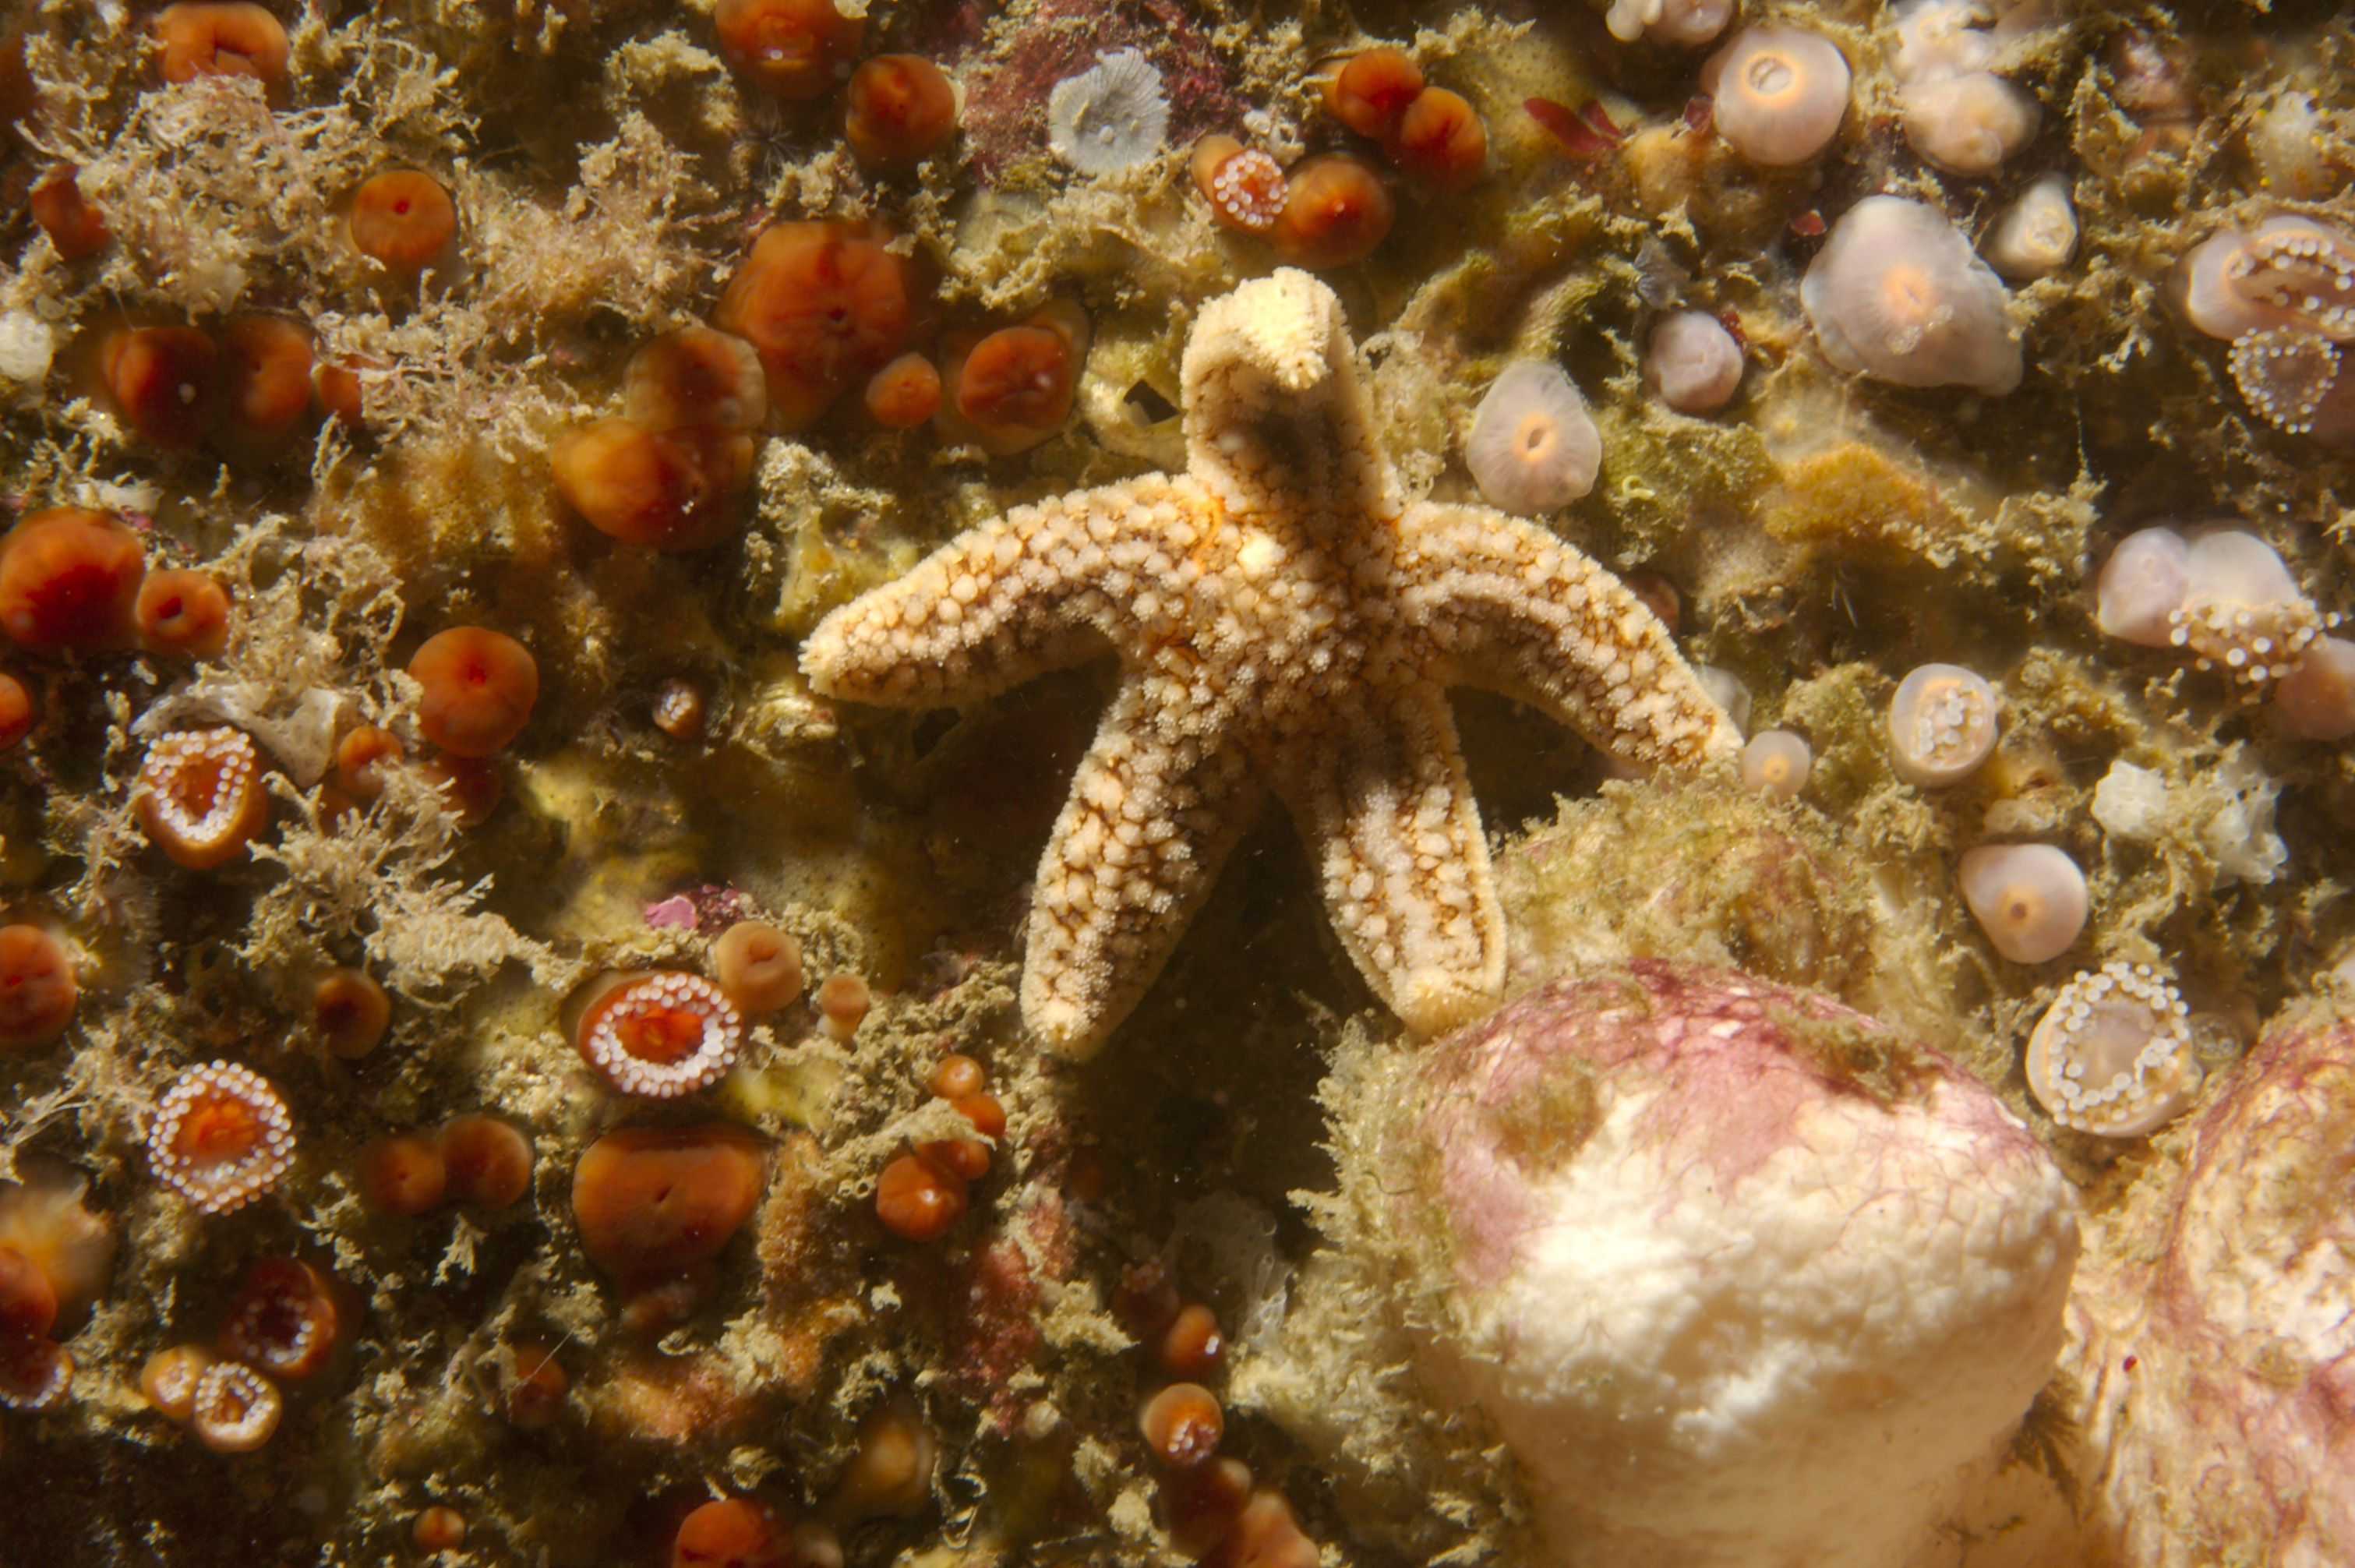 UK marine life starfish